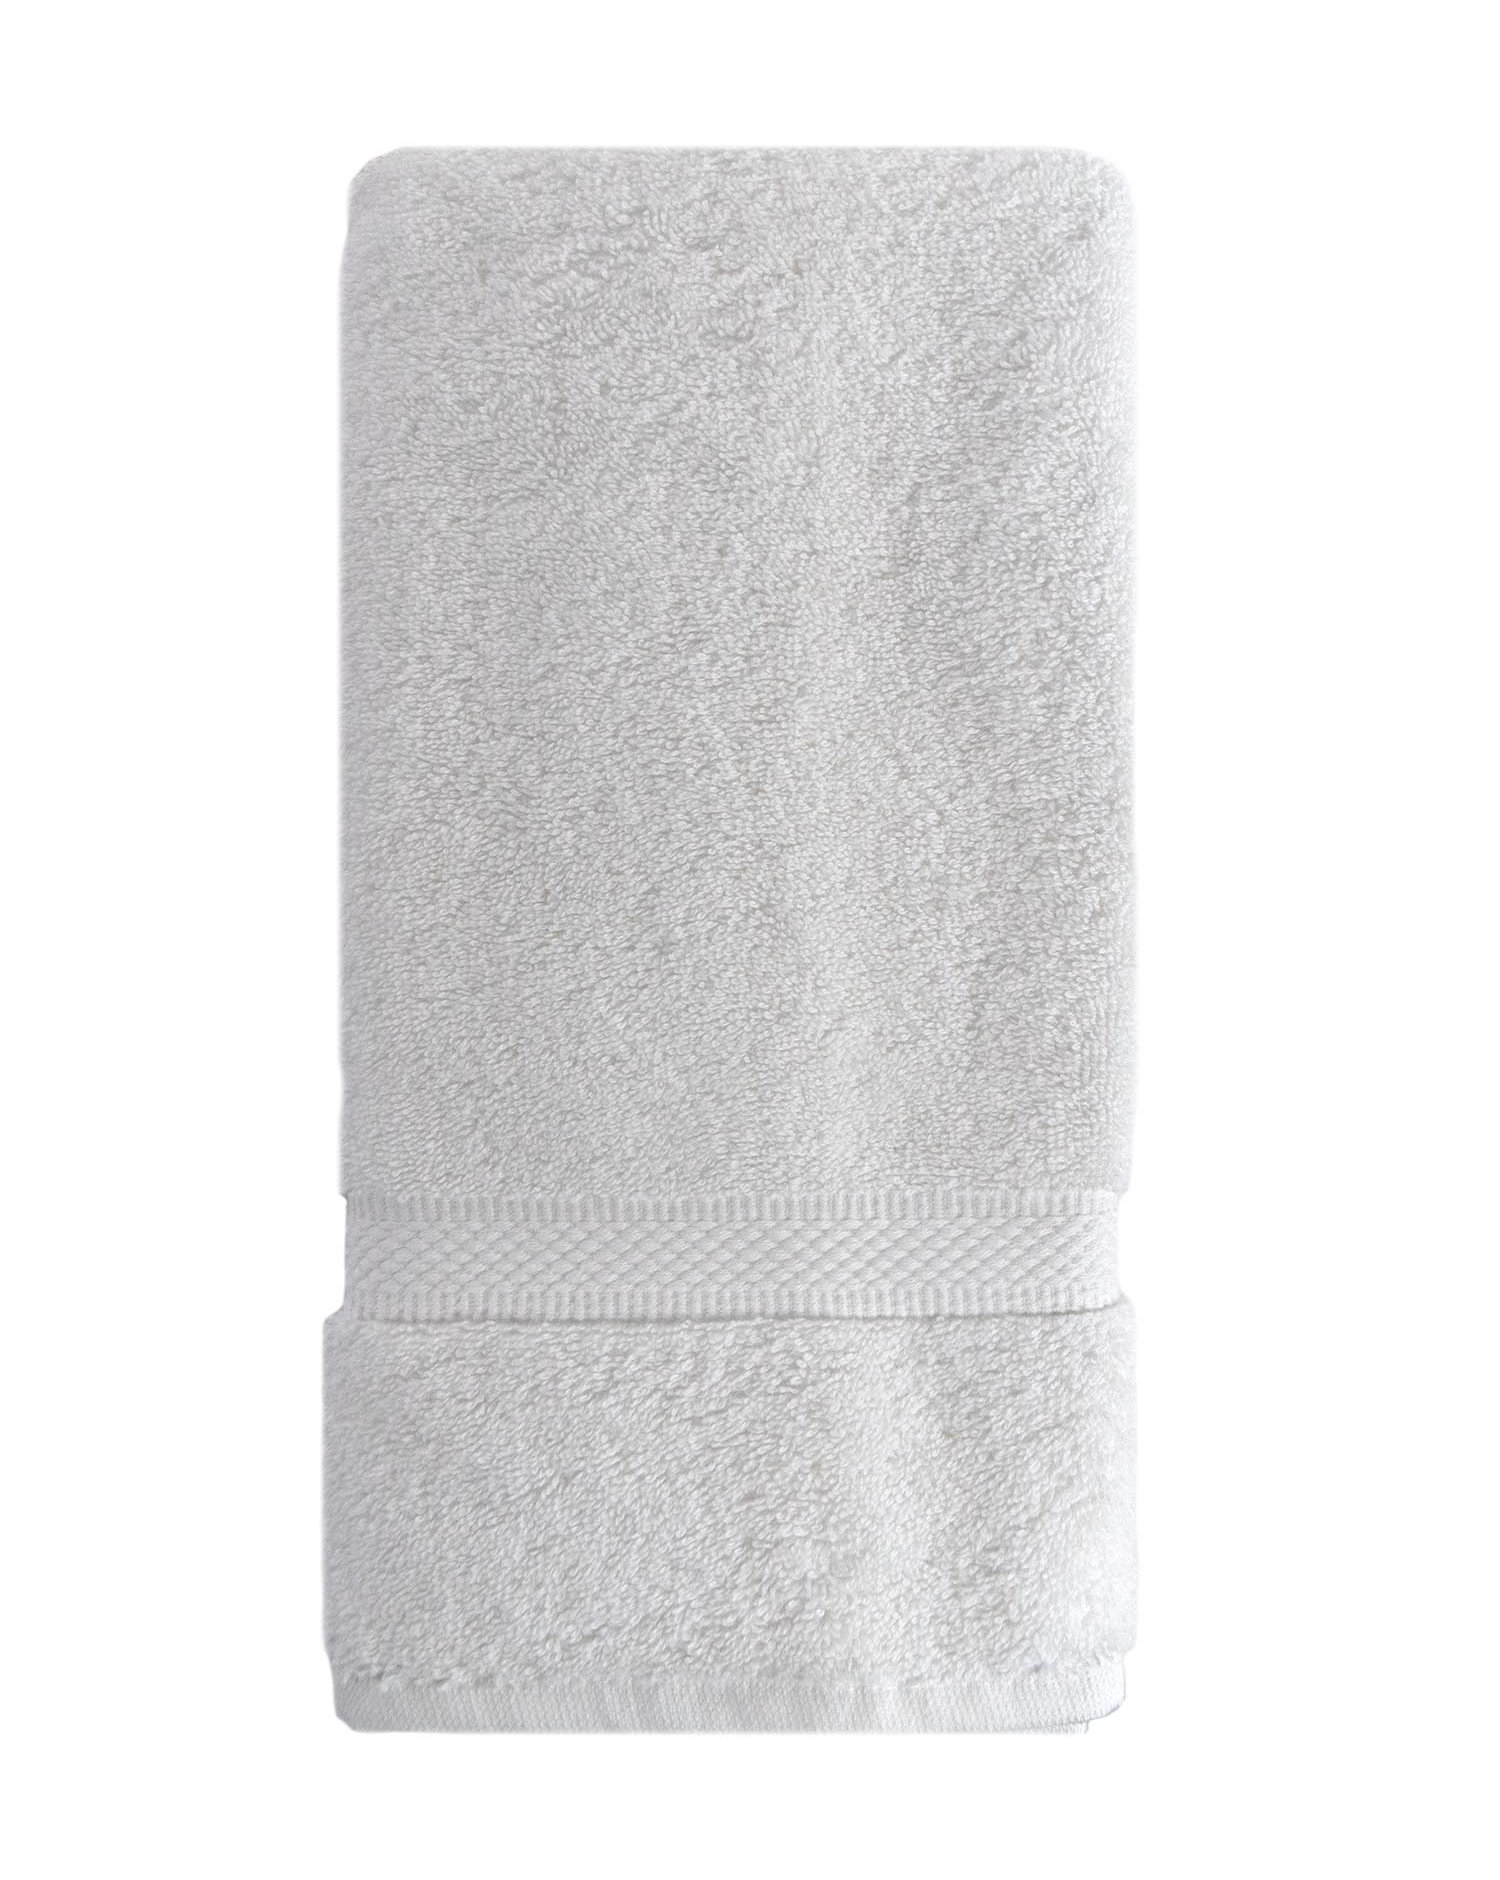 Martex Basic 100% Cotton Bath Towels & Reviews